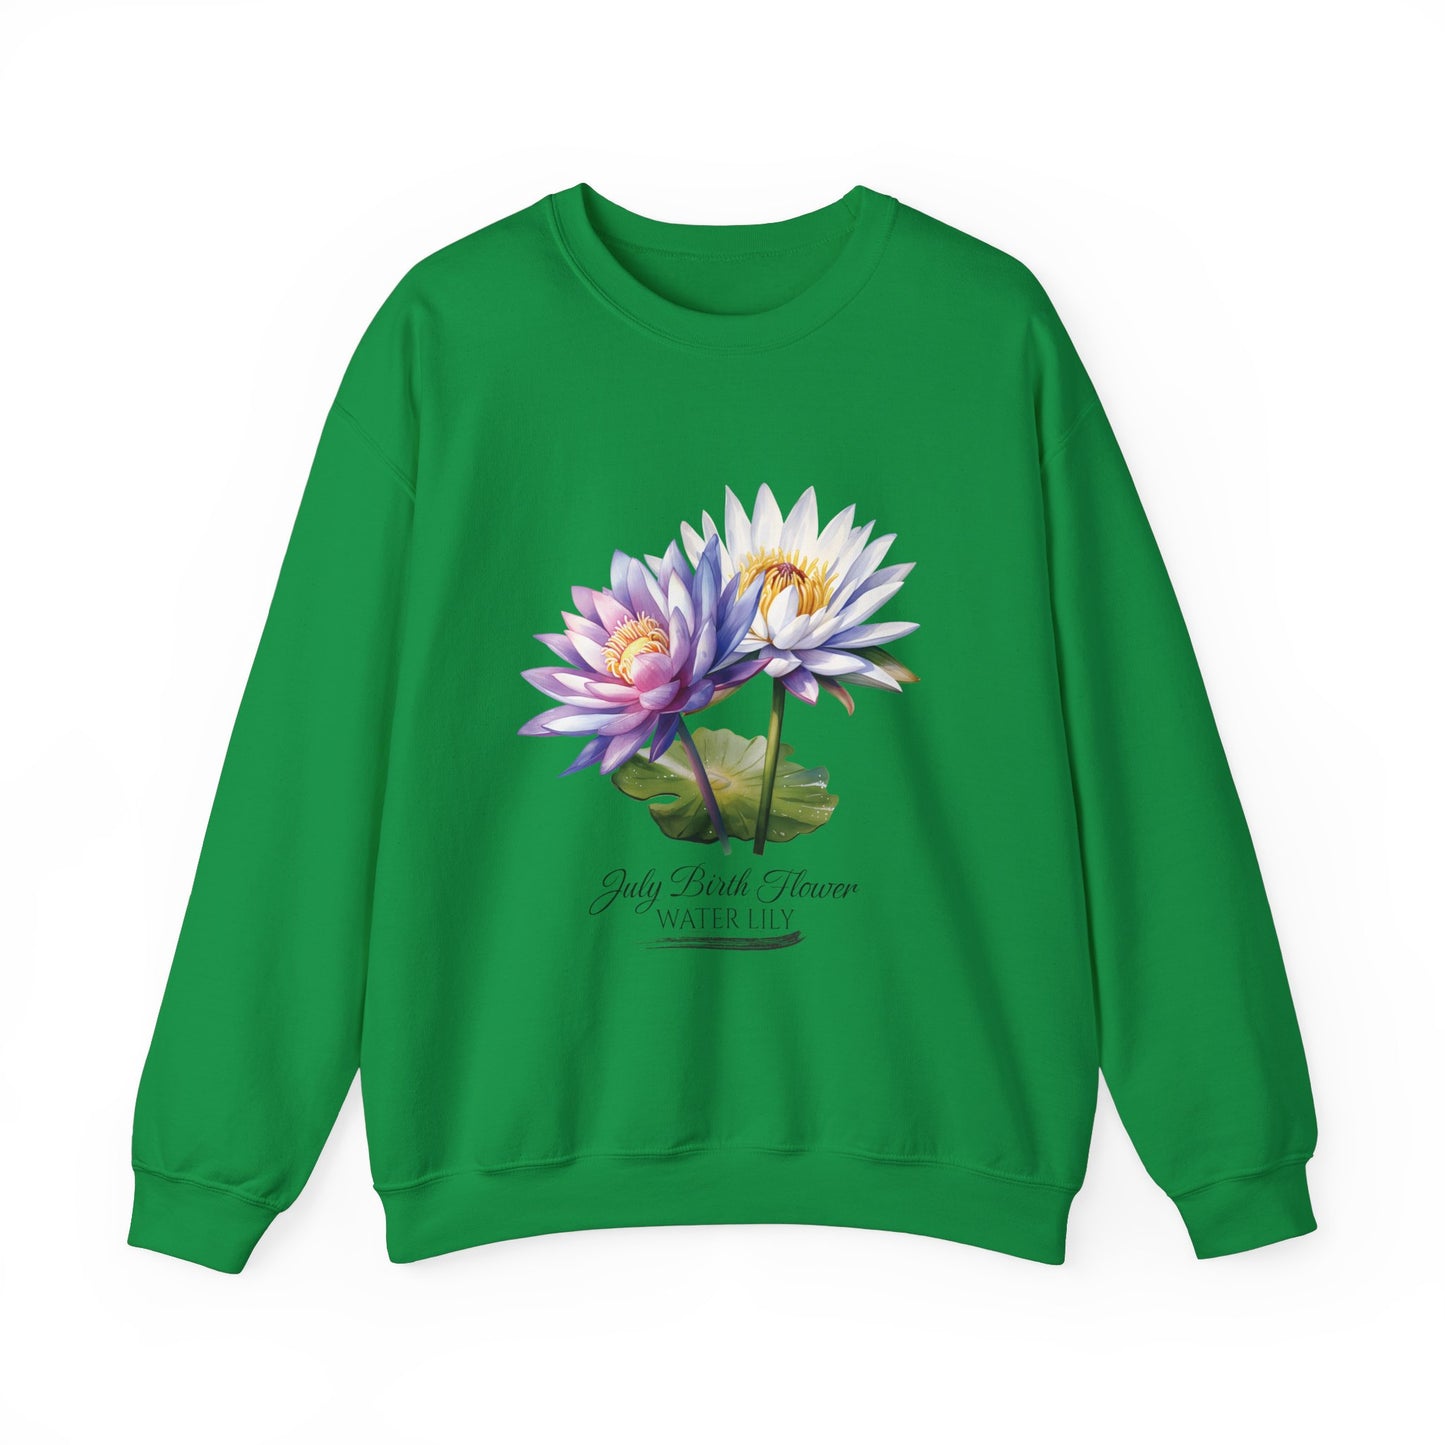 July Birth Flower (Water Lily) - Unisex Heavy Blend™ Crewneck Sweatshirt